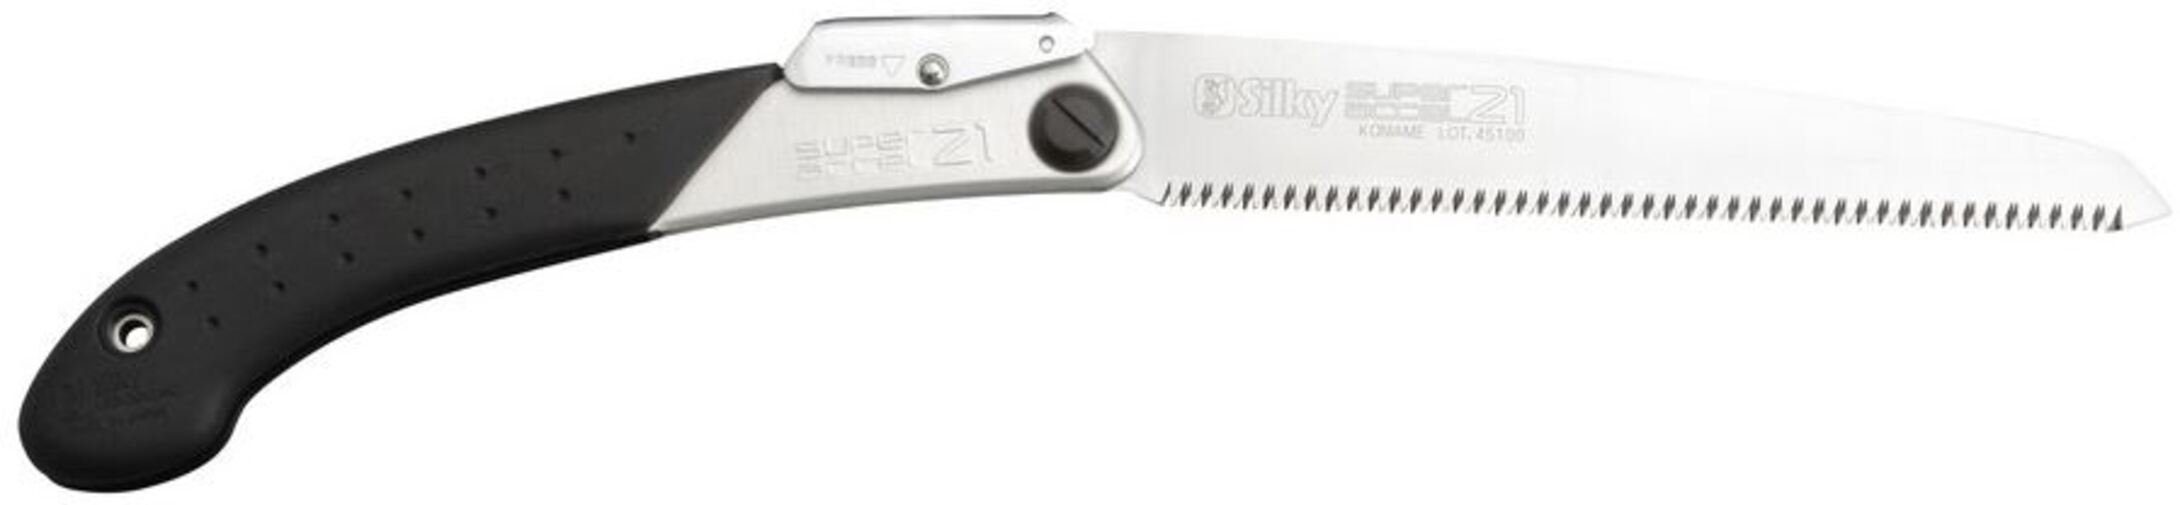 Silky Klappsäge Silky Super Accel 210mm, 14 ZpZ fein - Allround-Klappsäge mit leichtem Winkel